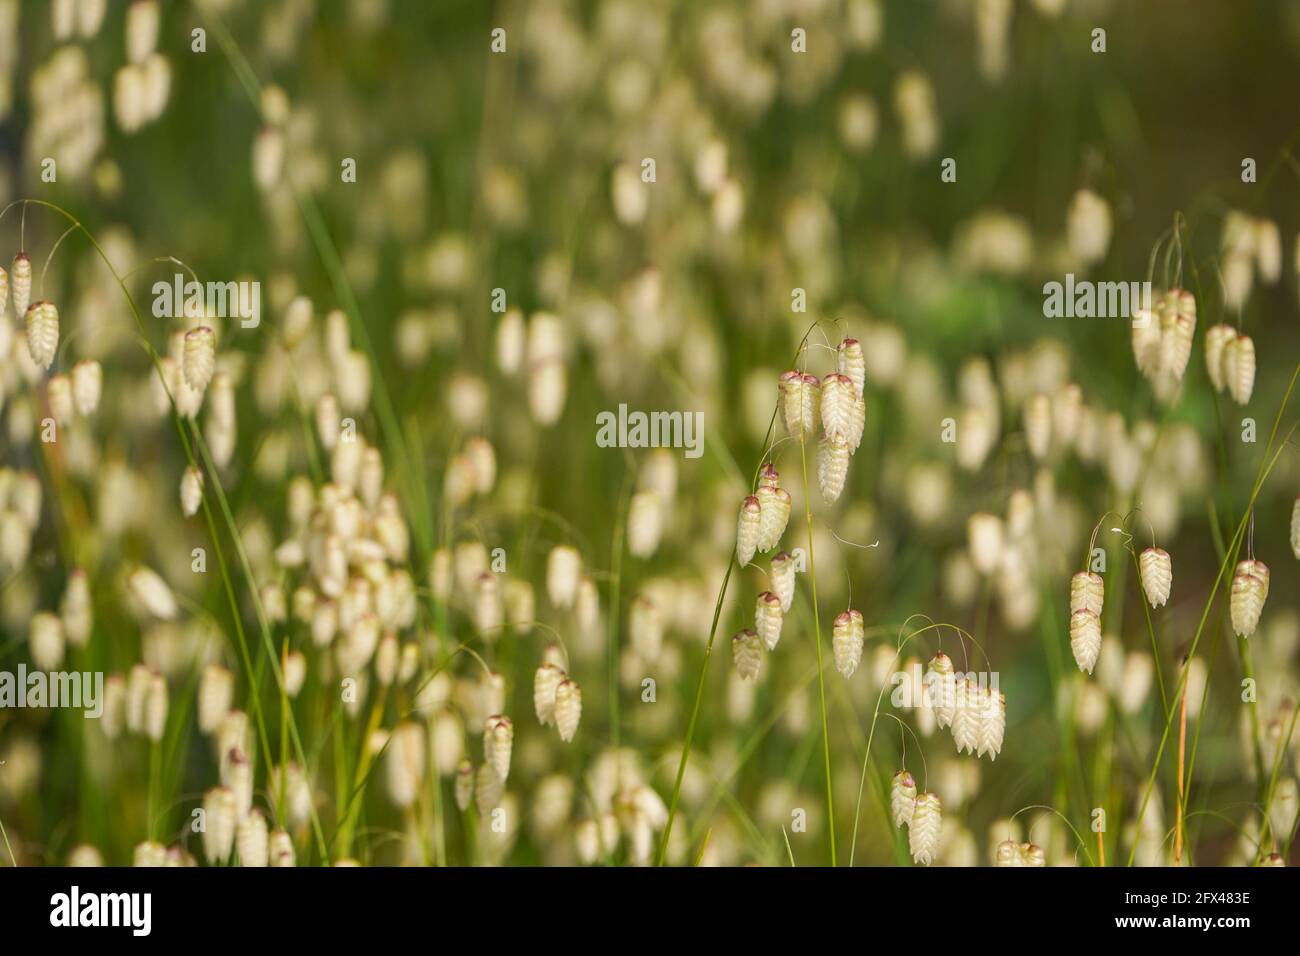 Briza maxima, quaking grass, Spain. Stock Photo